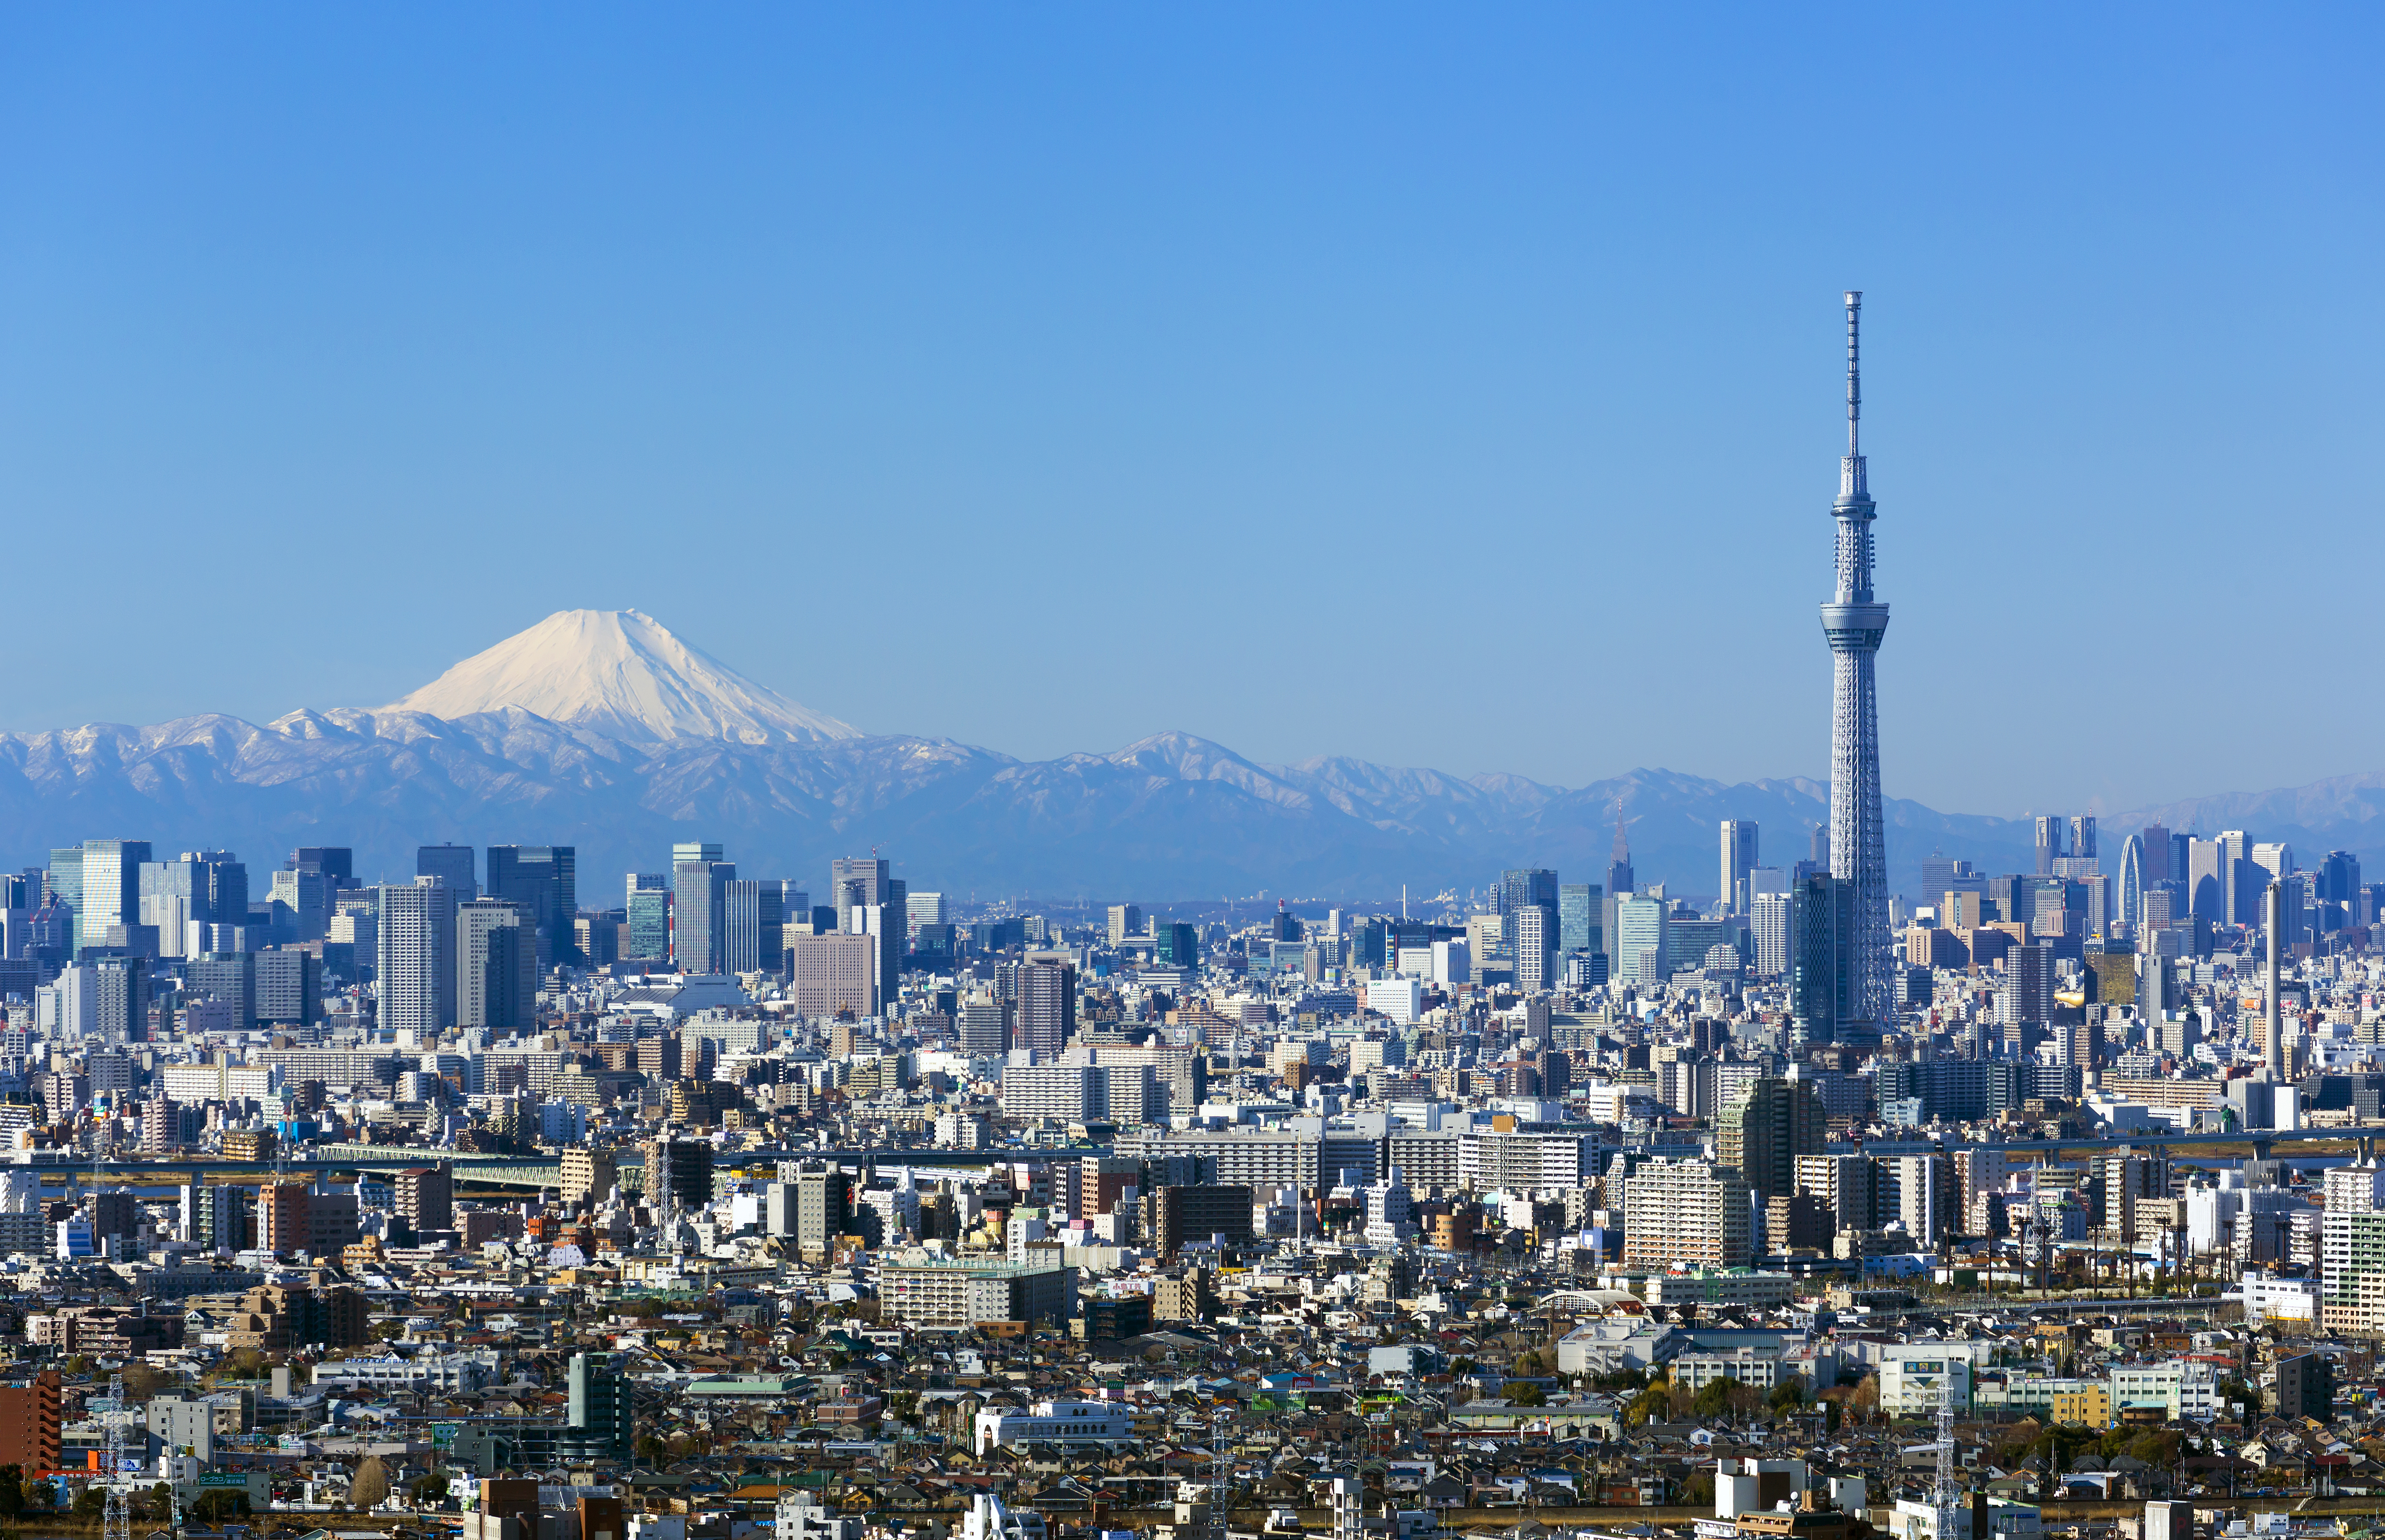 東京都市風景 快晴青空 富士山と東京スカイツリー 東京都心の高層ビル群を一望 江戸川病なう